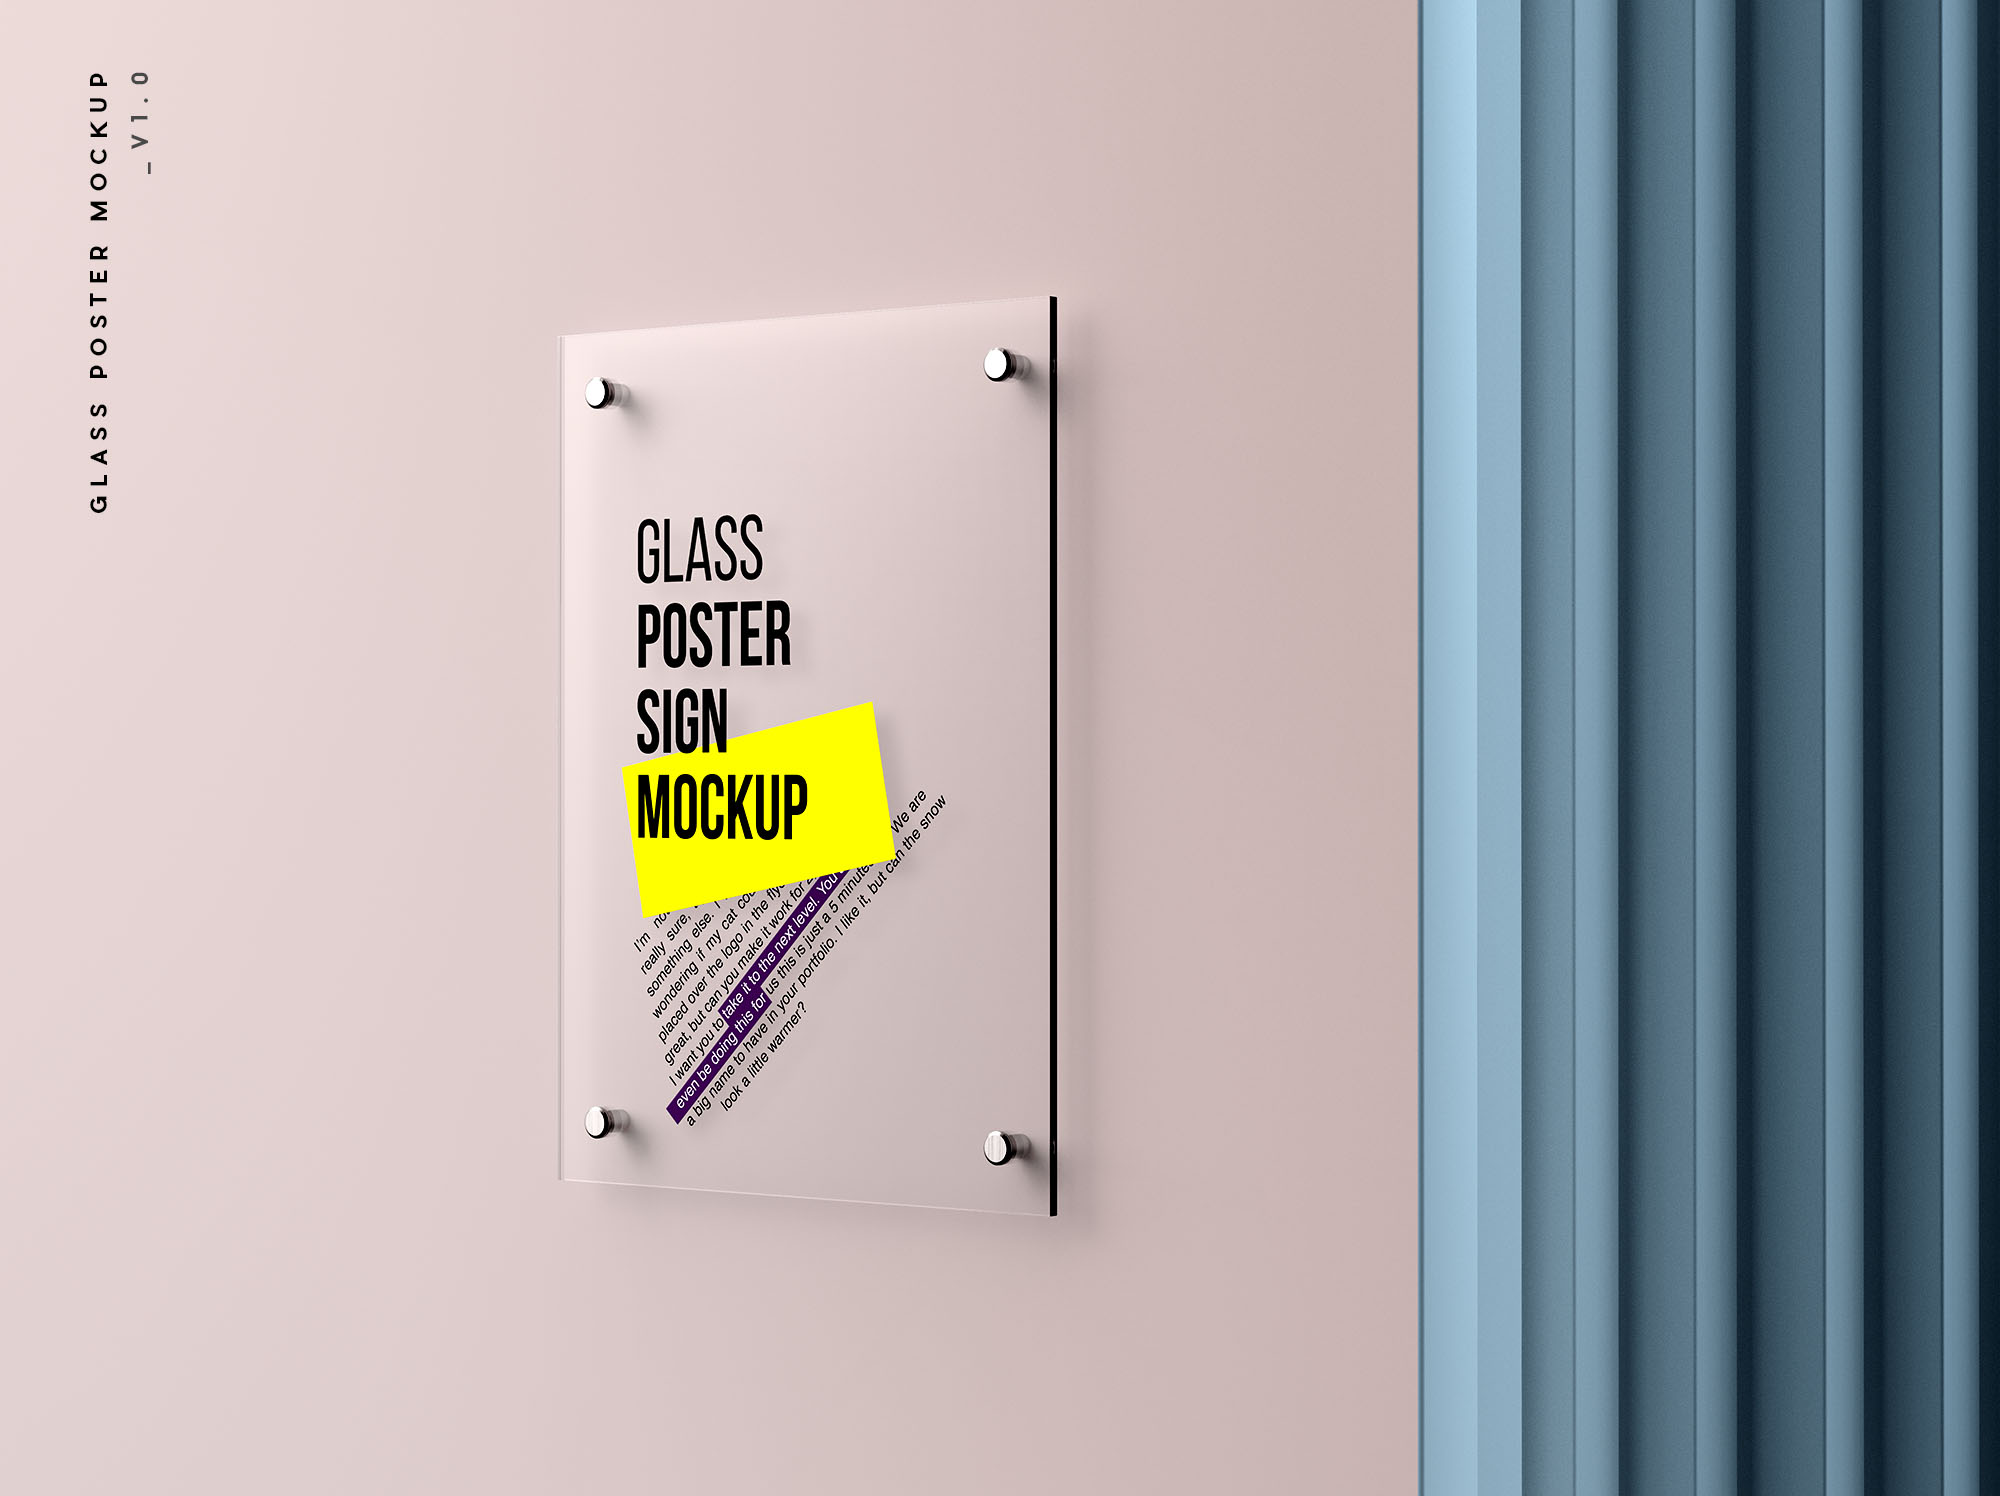 玻璃海报标牌样机 Glass Poster Mockup 样机素材 第1张